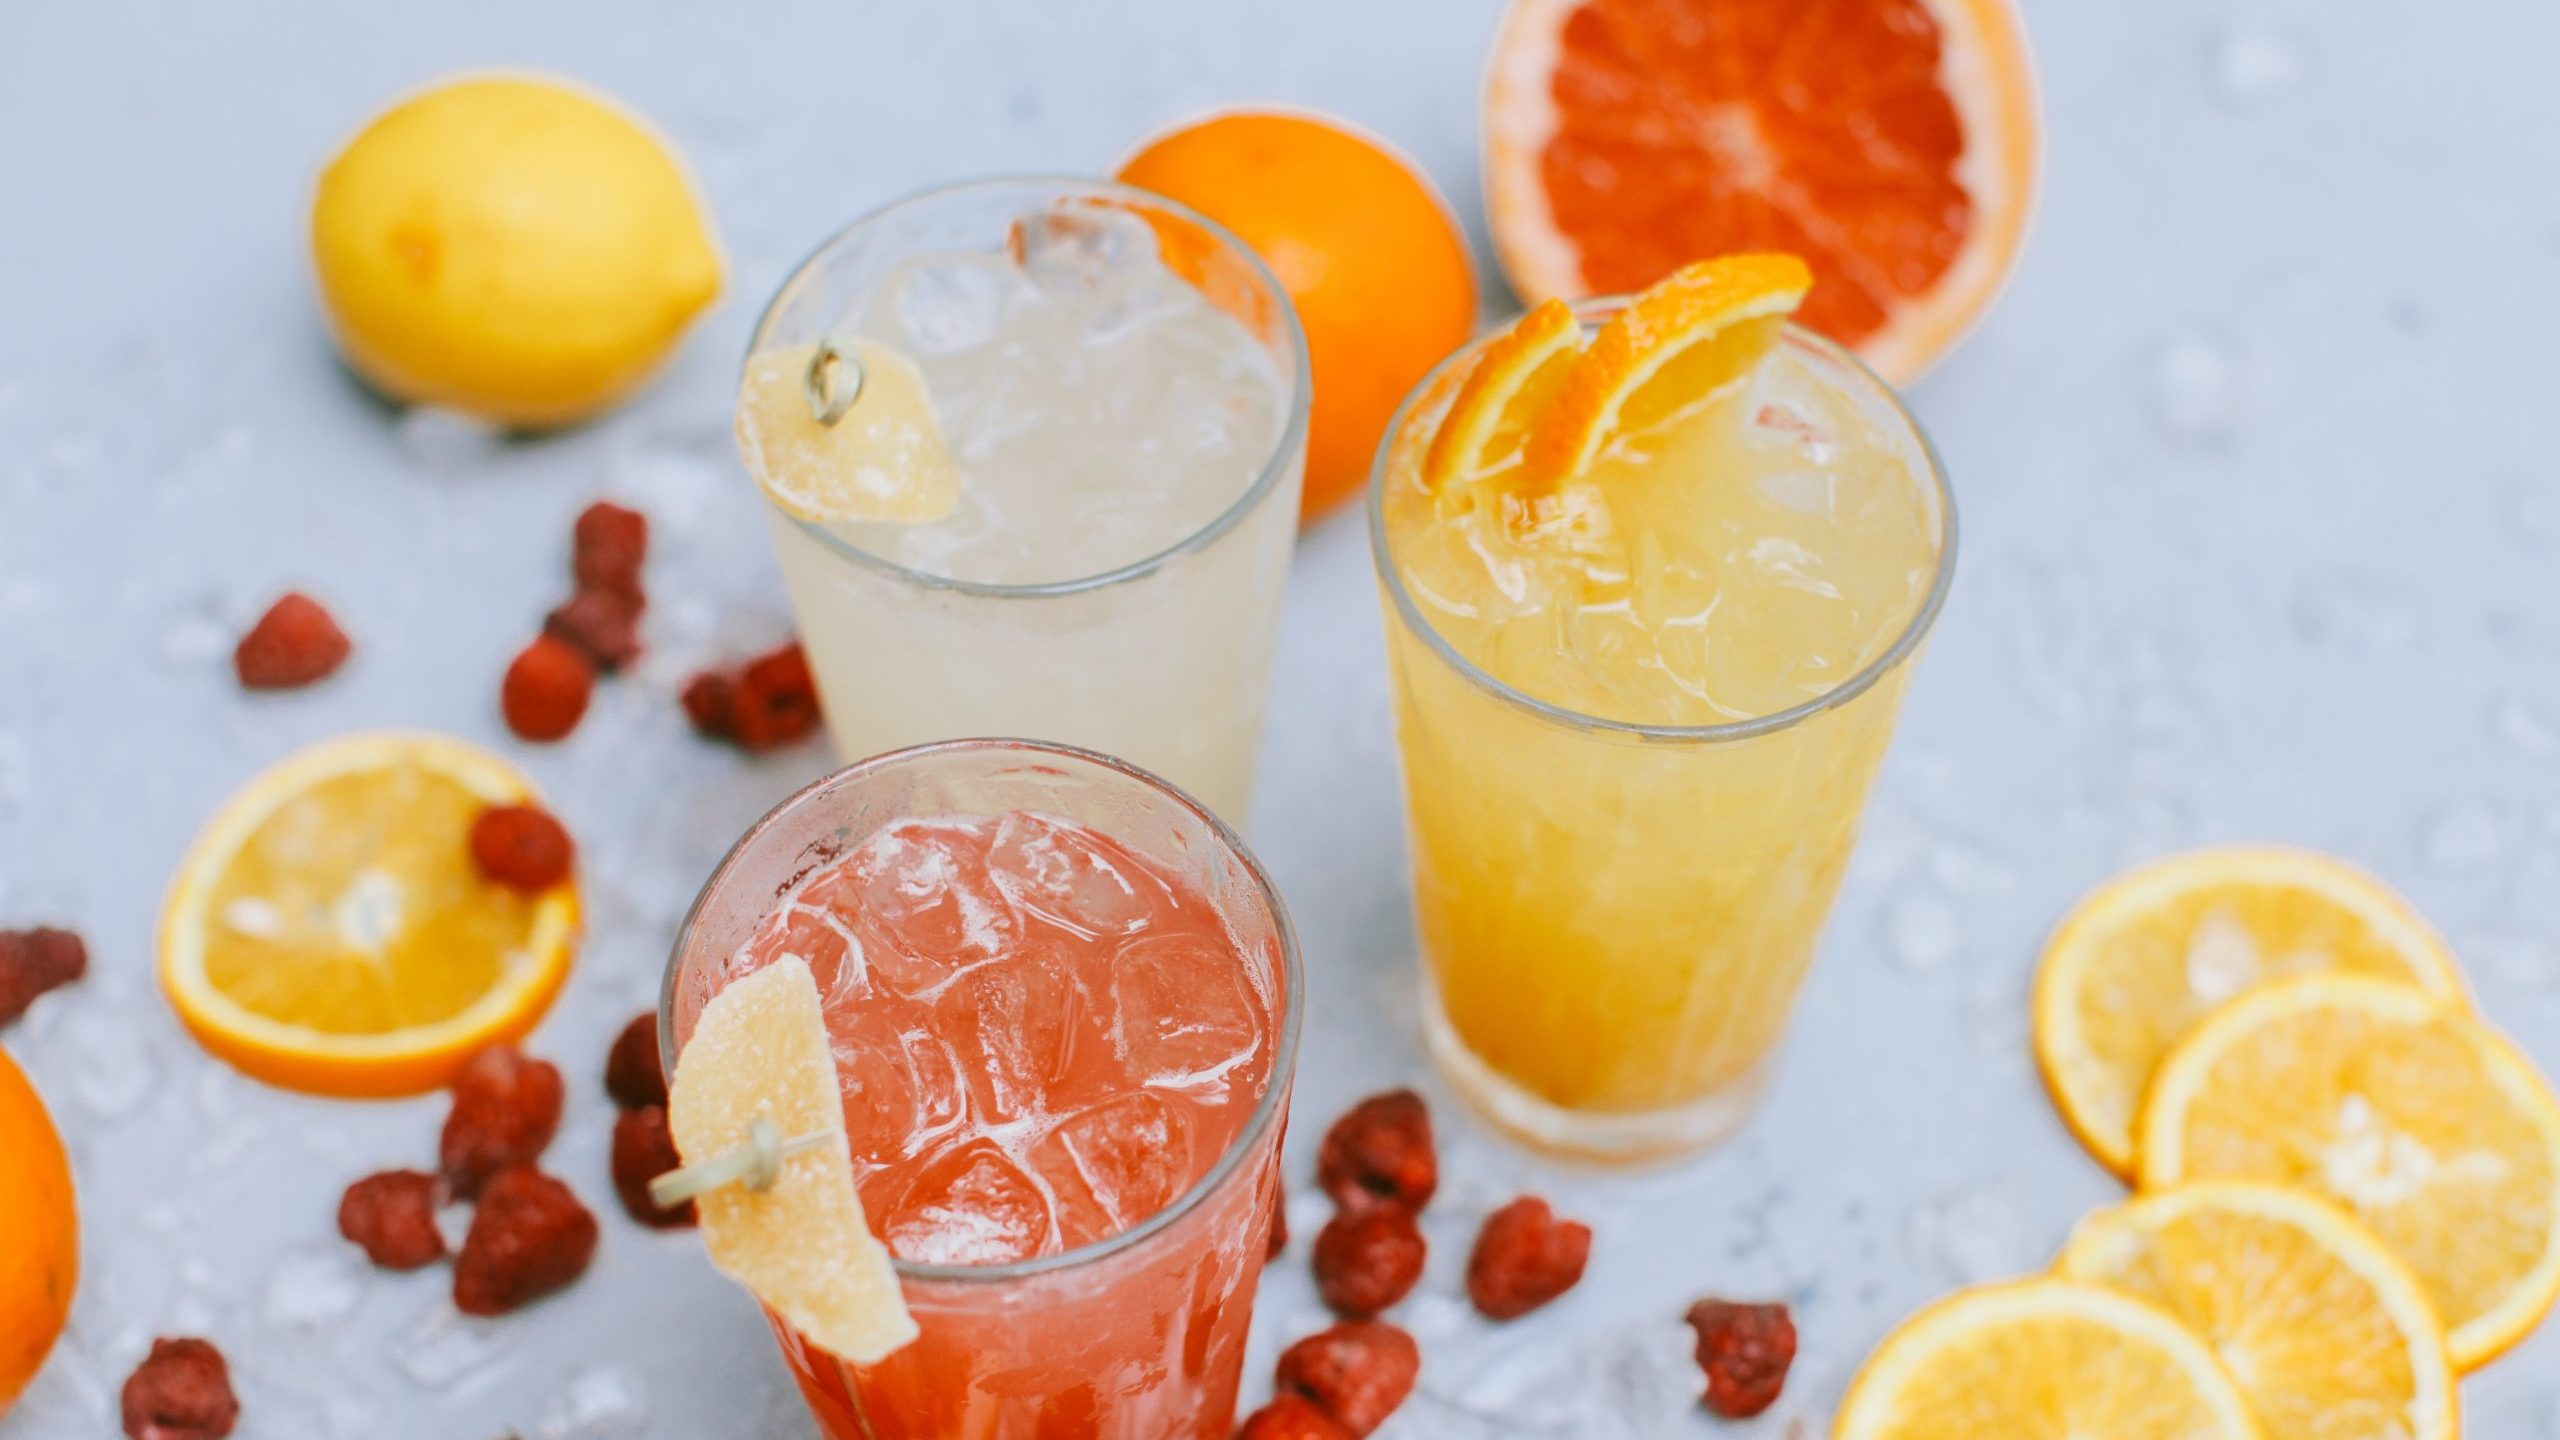 ¿Has engordado esta Navidad? Bebe este zumo de naranja y limón para perder peso